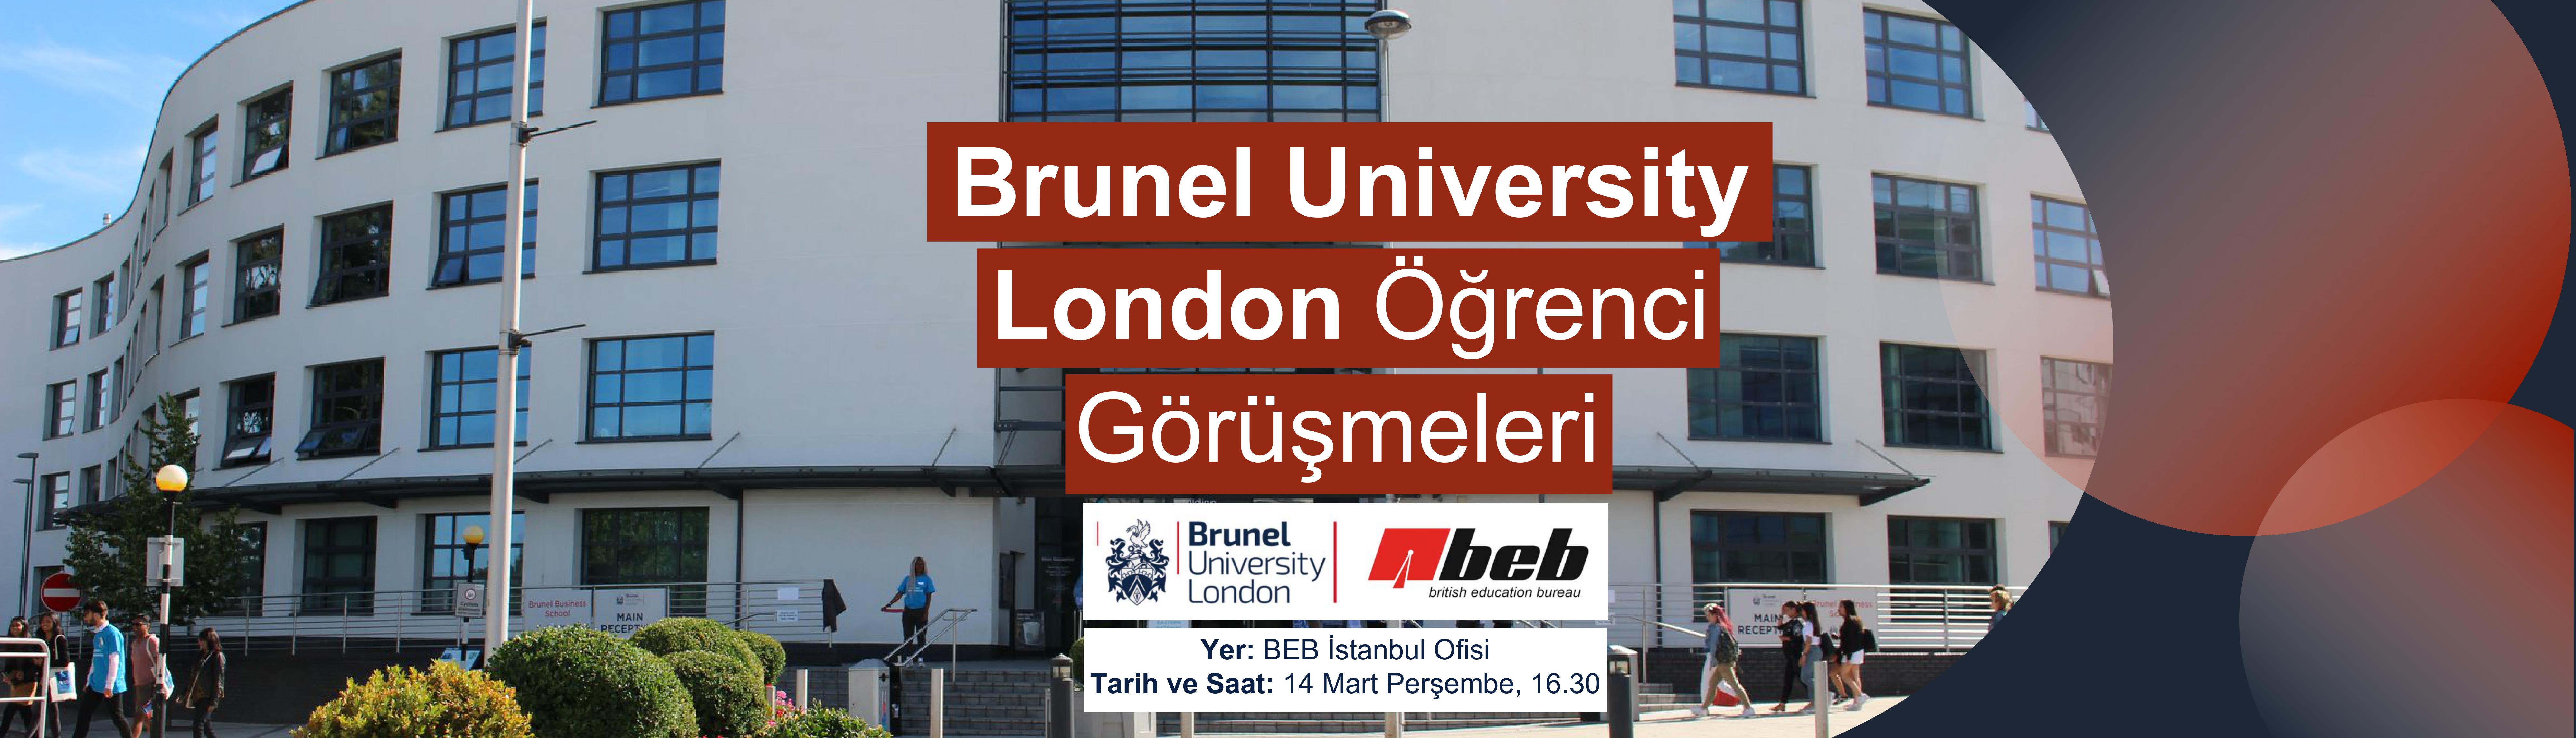 Brunel-University-London-Ogrenci-Gorusmeleri-BEB-Istanbul-Ofisinde